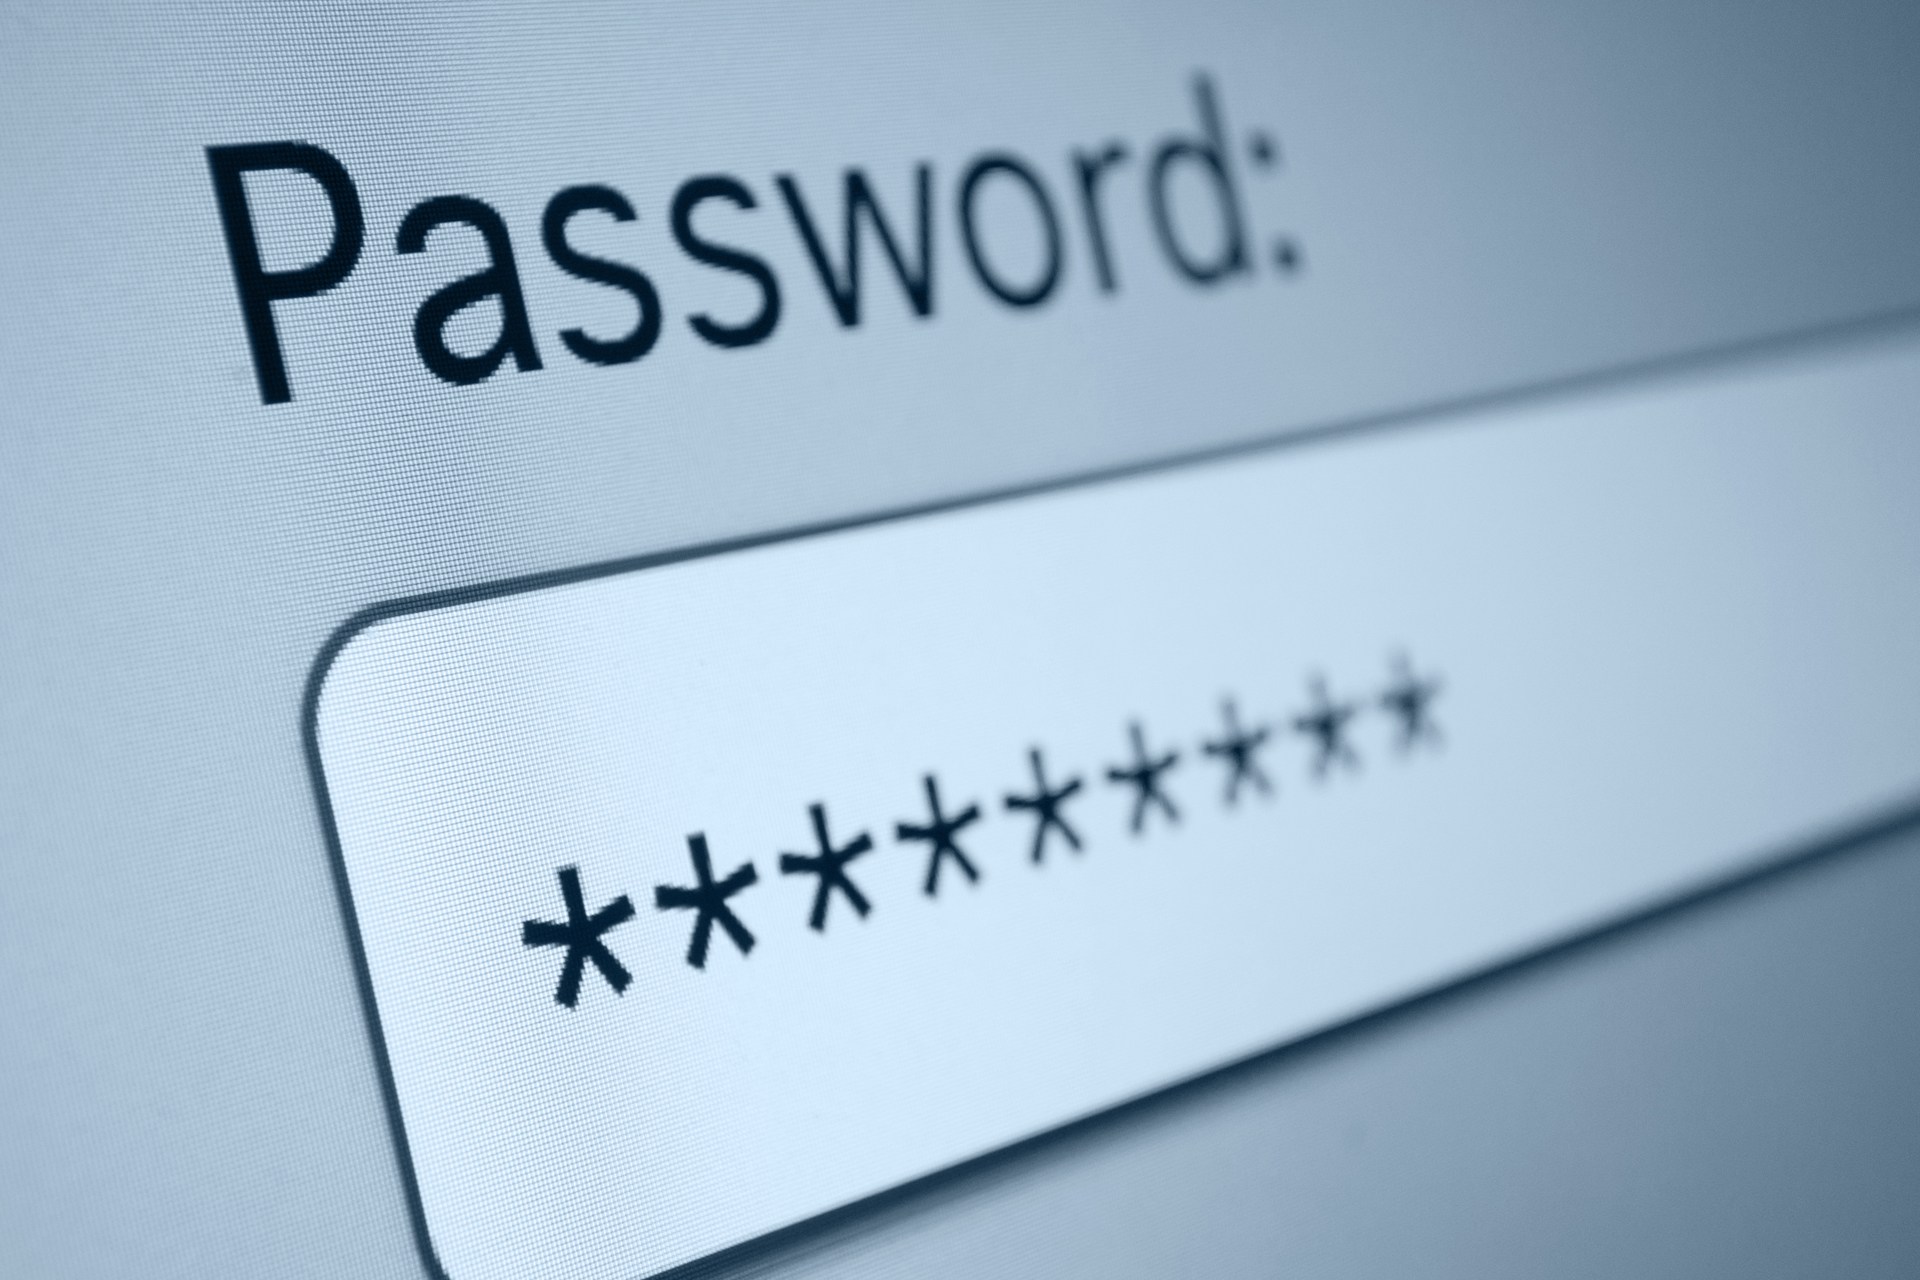 رمزهای عبور غیر هوشمندانه، یکی از اشتباهات امنیتی کاربران است.